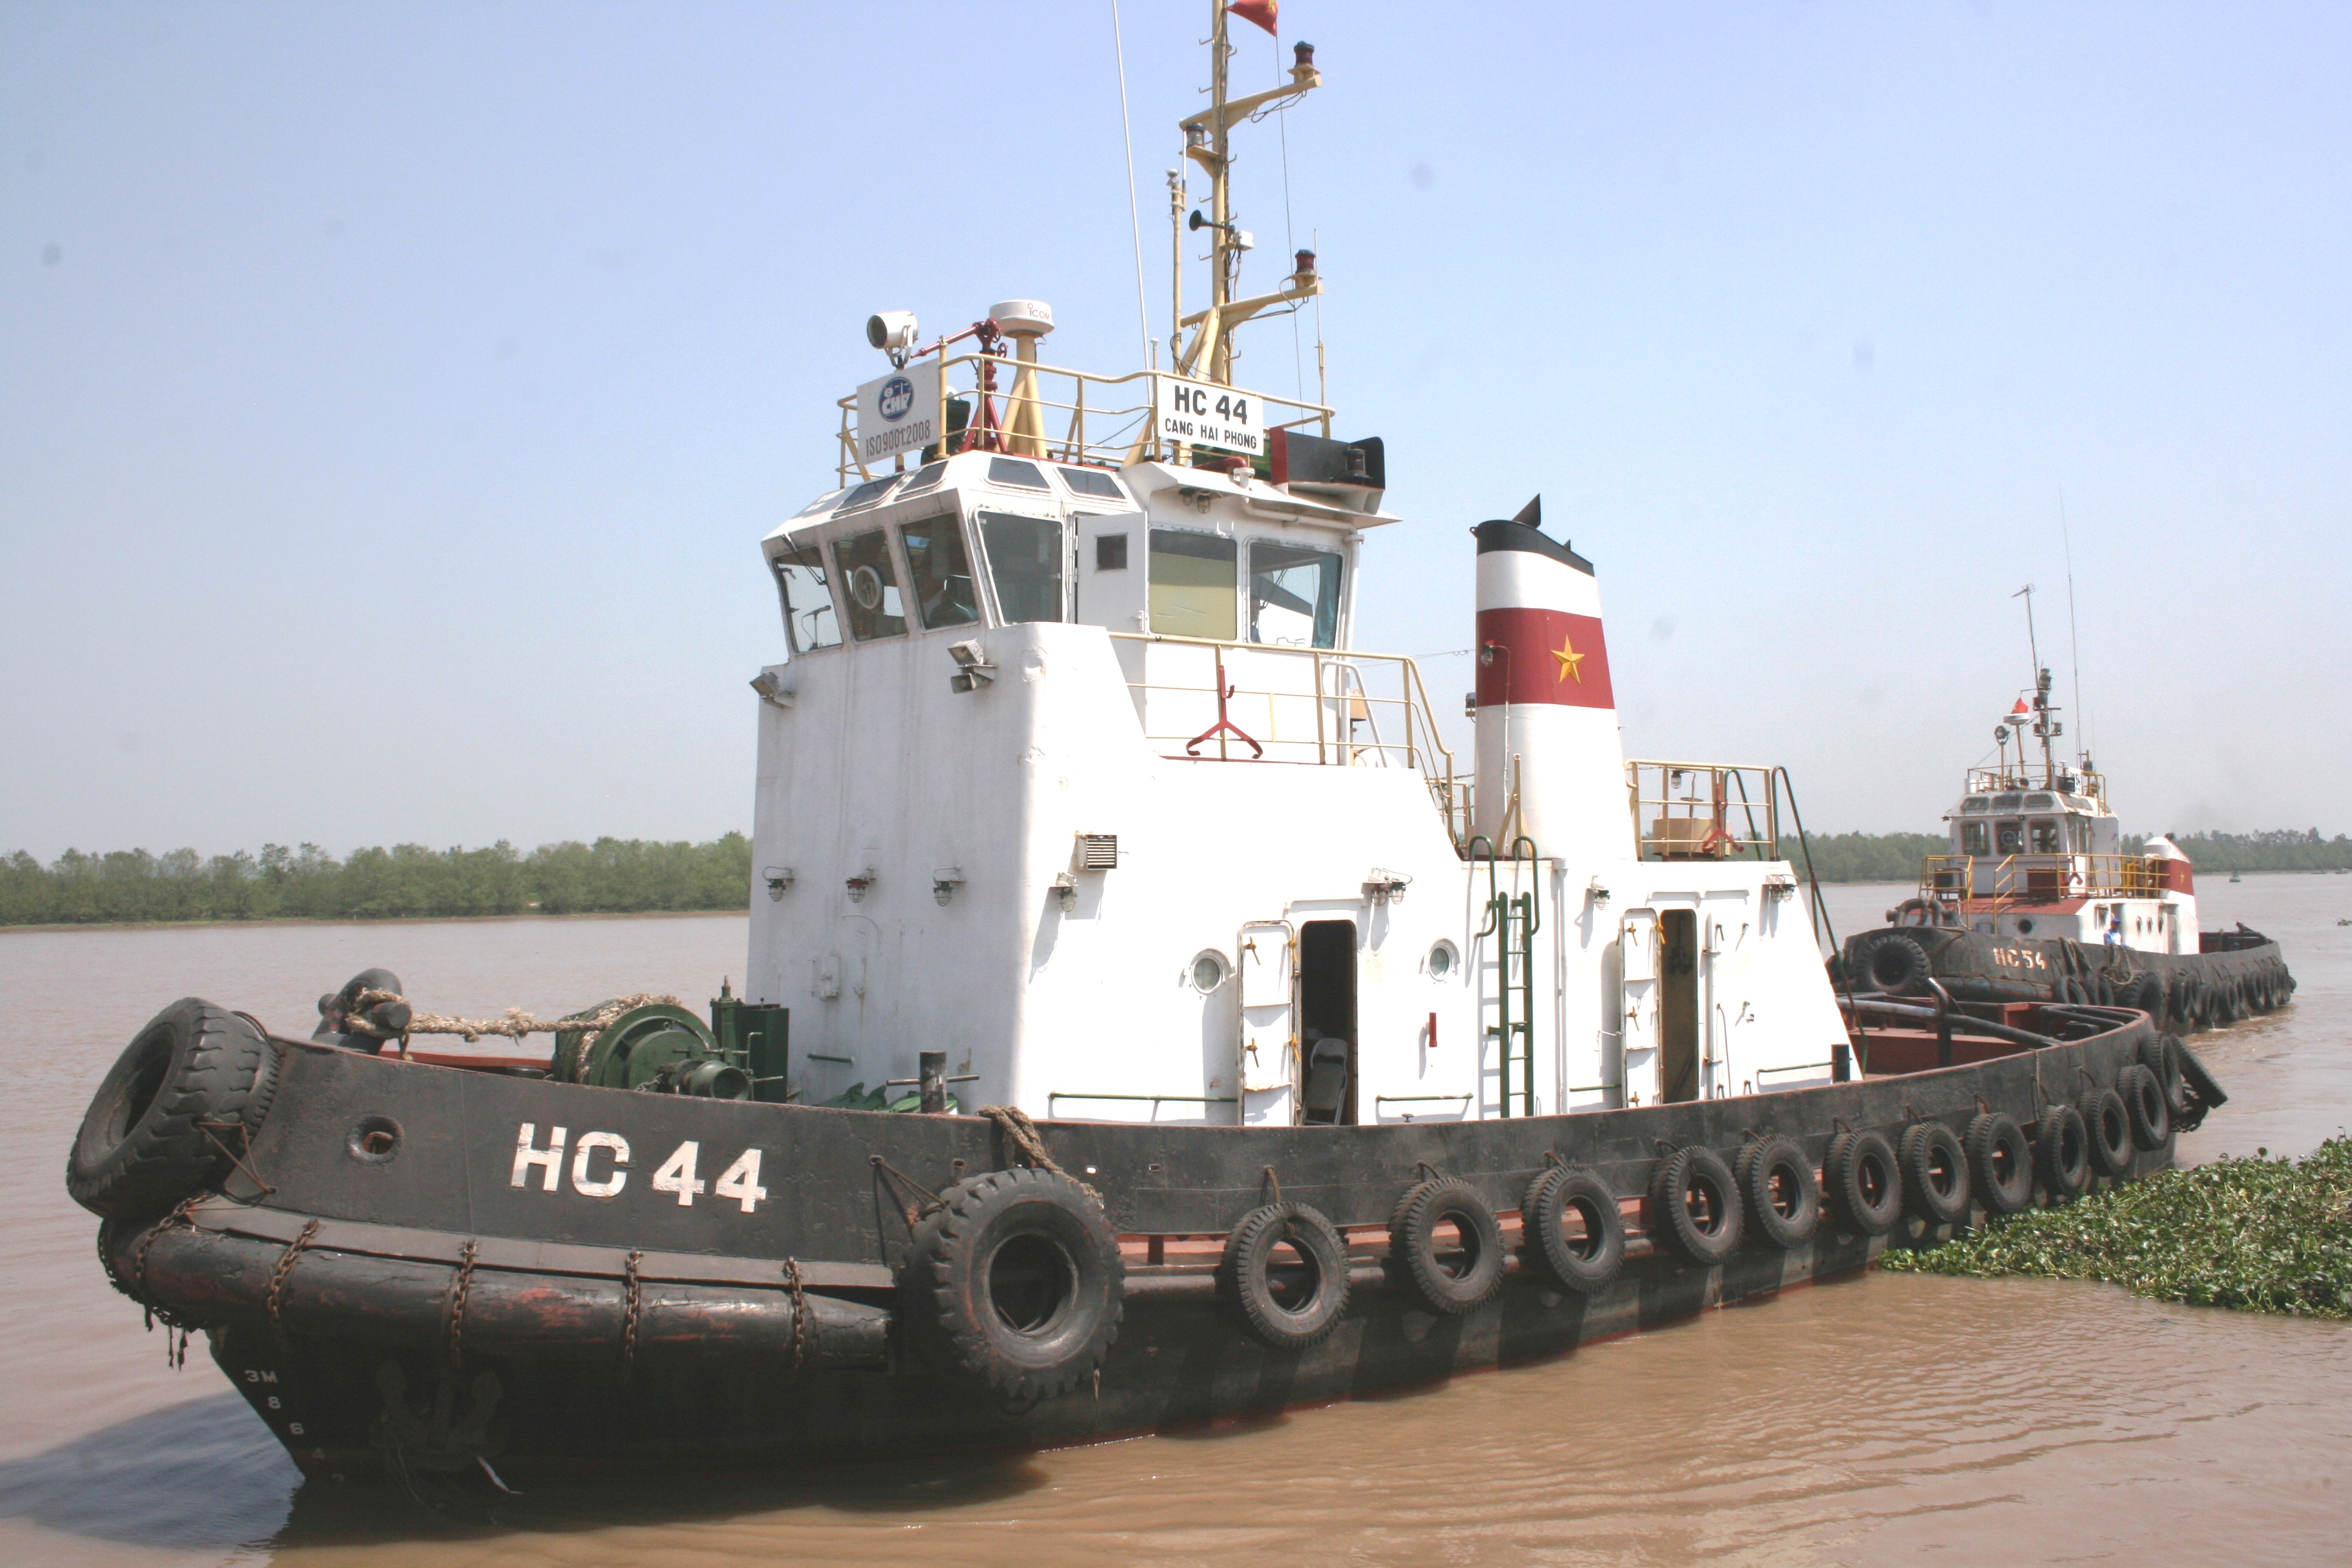 HC44